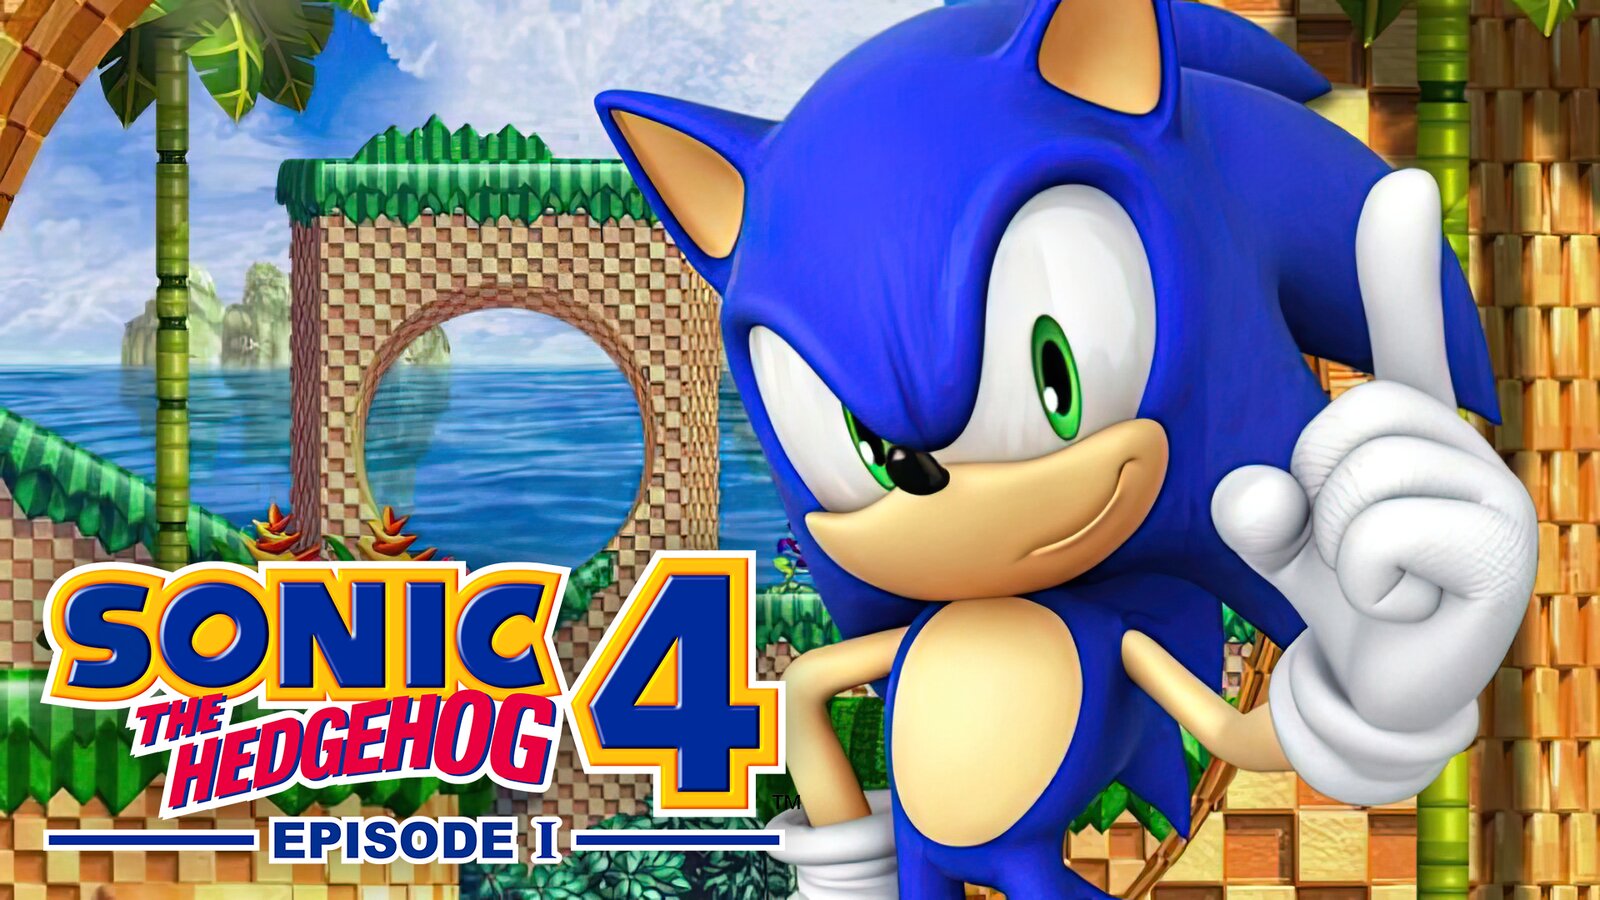 Sonic The Hedgehog 4: Episode I